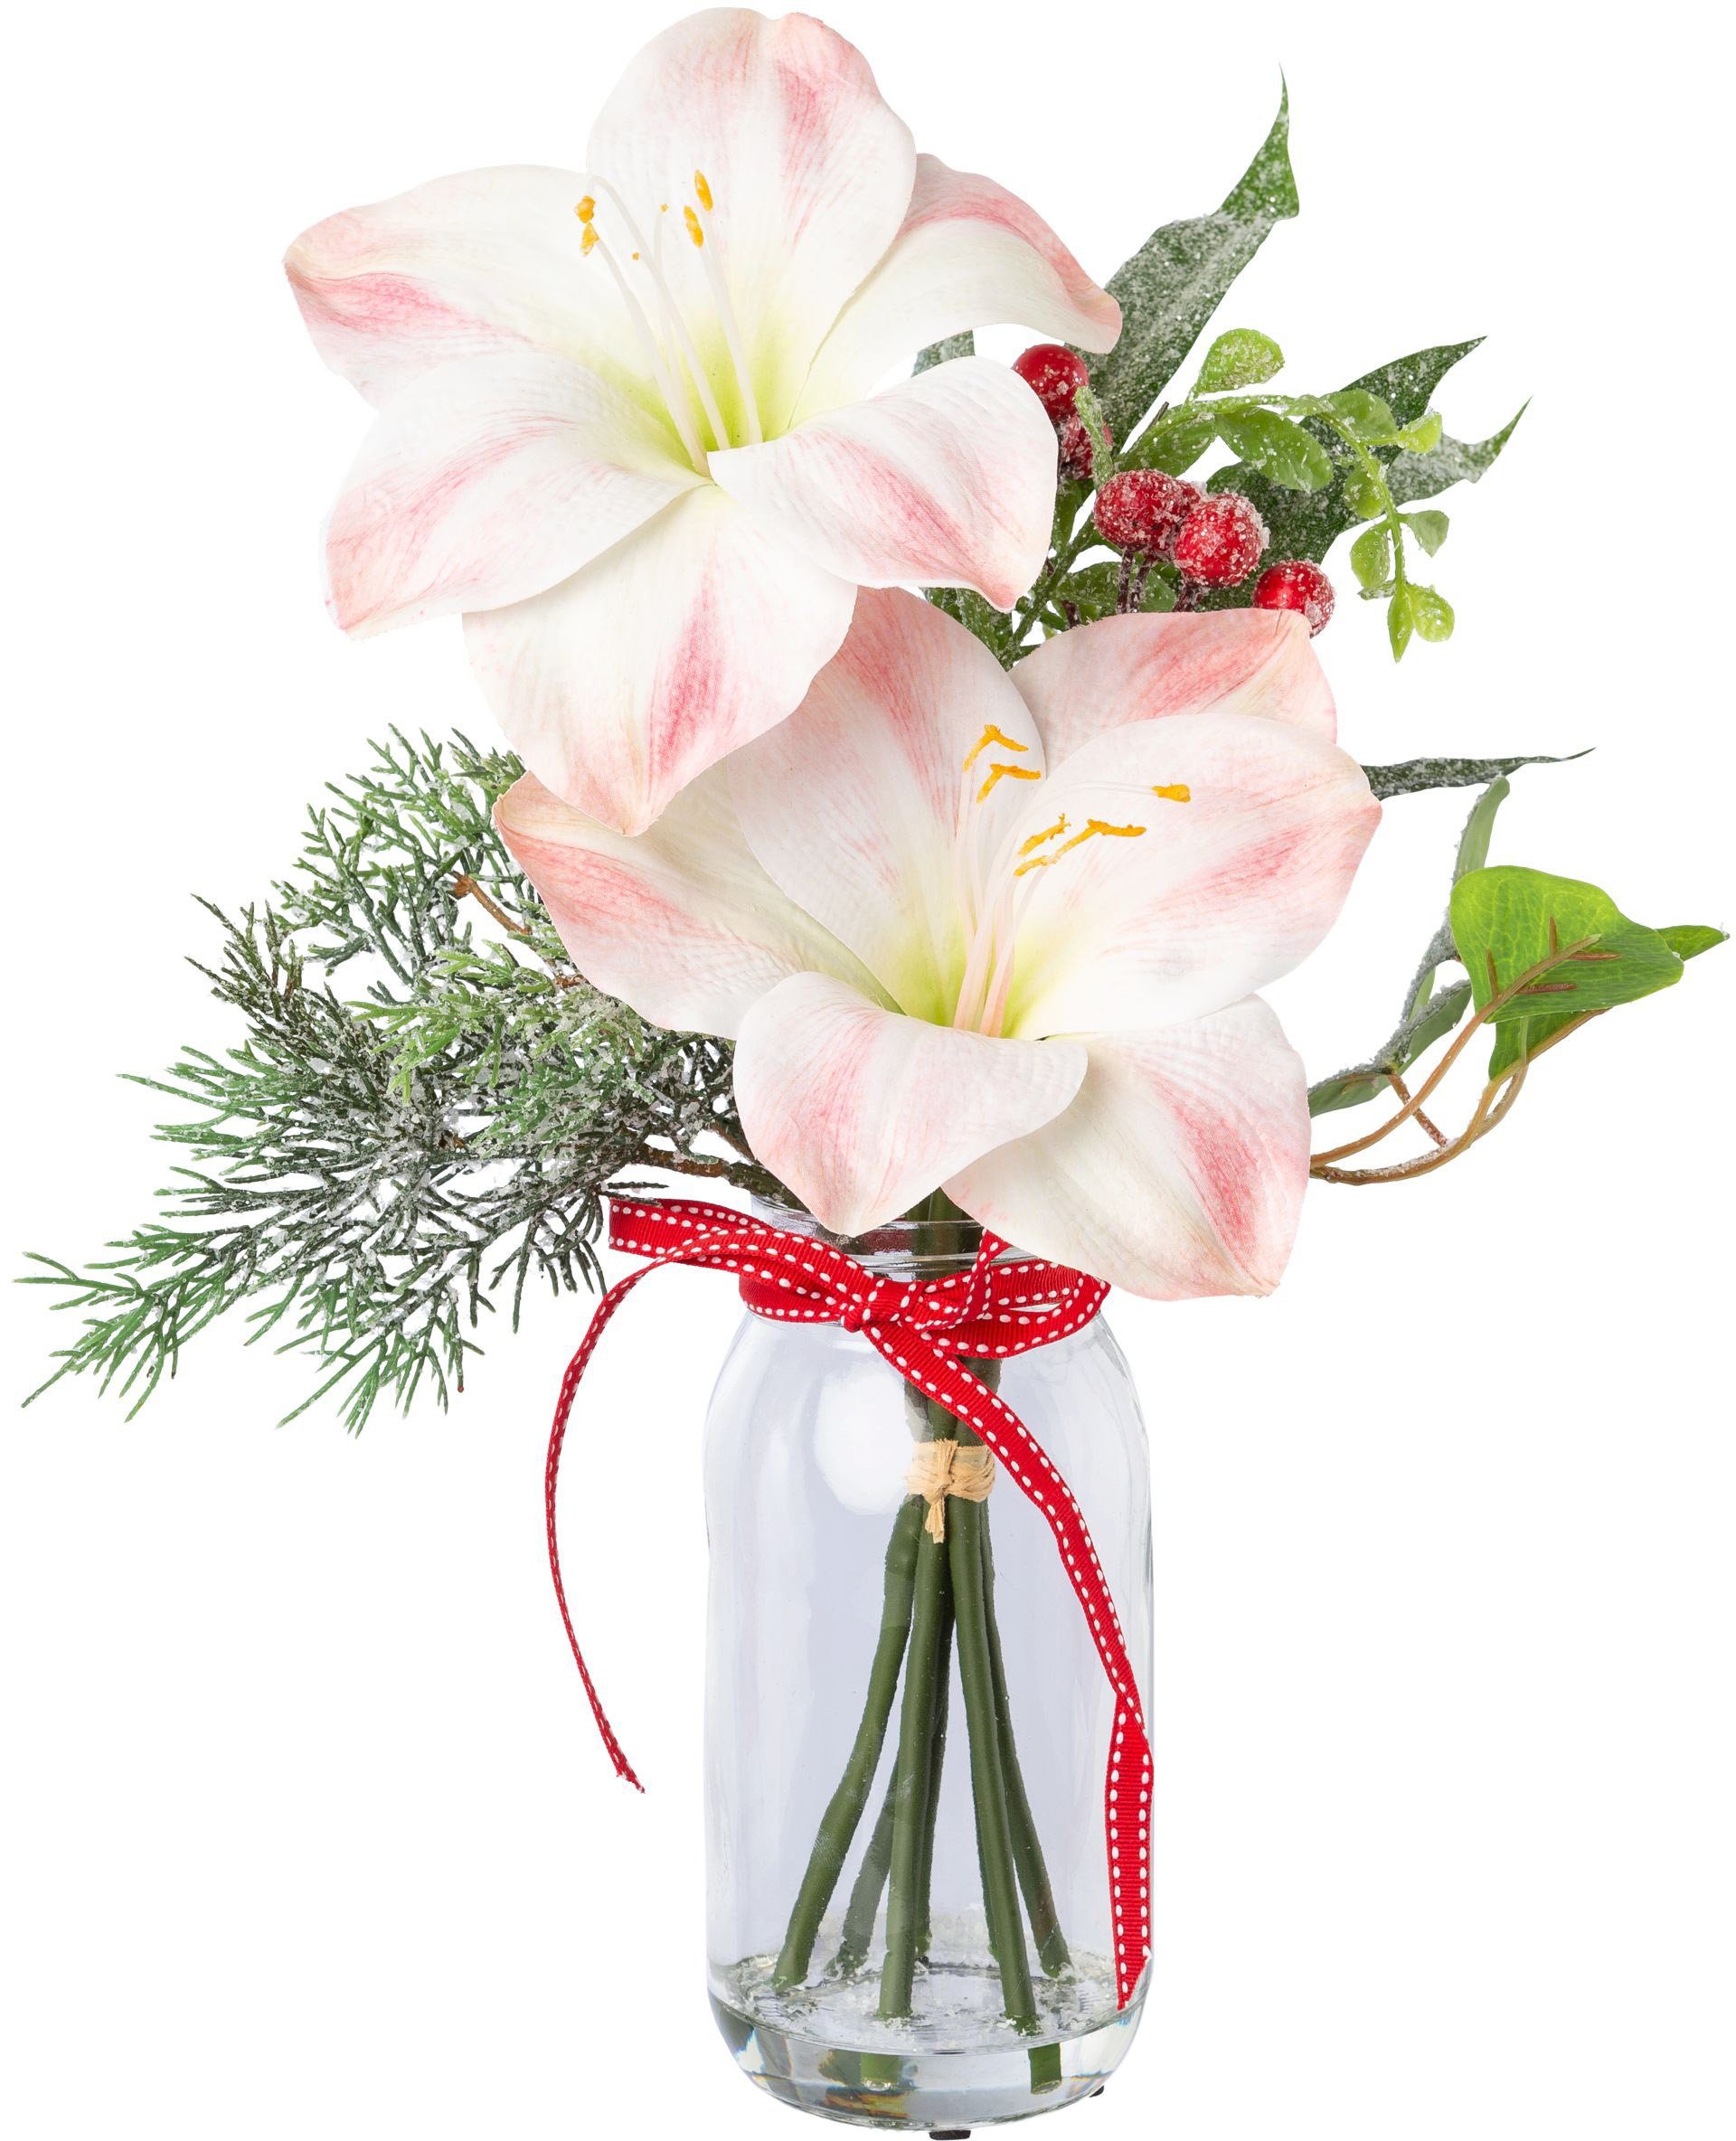 Winterliche Kunstpflanze Weihnachtsdeko Amaryllis, Creativ green, Höhe 40 cm, üppige Blütenpracht im Glas | Kunstpflanzen